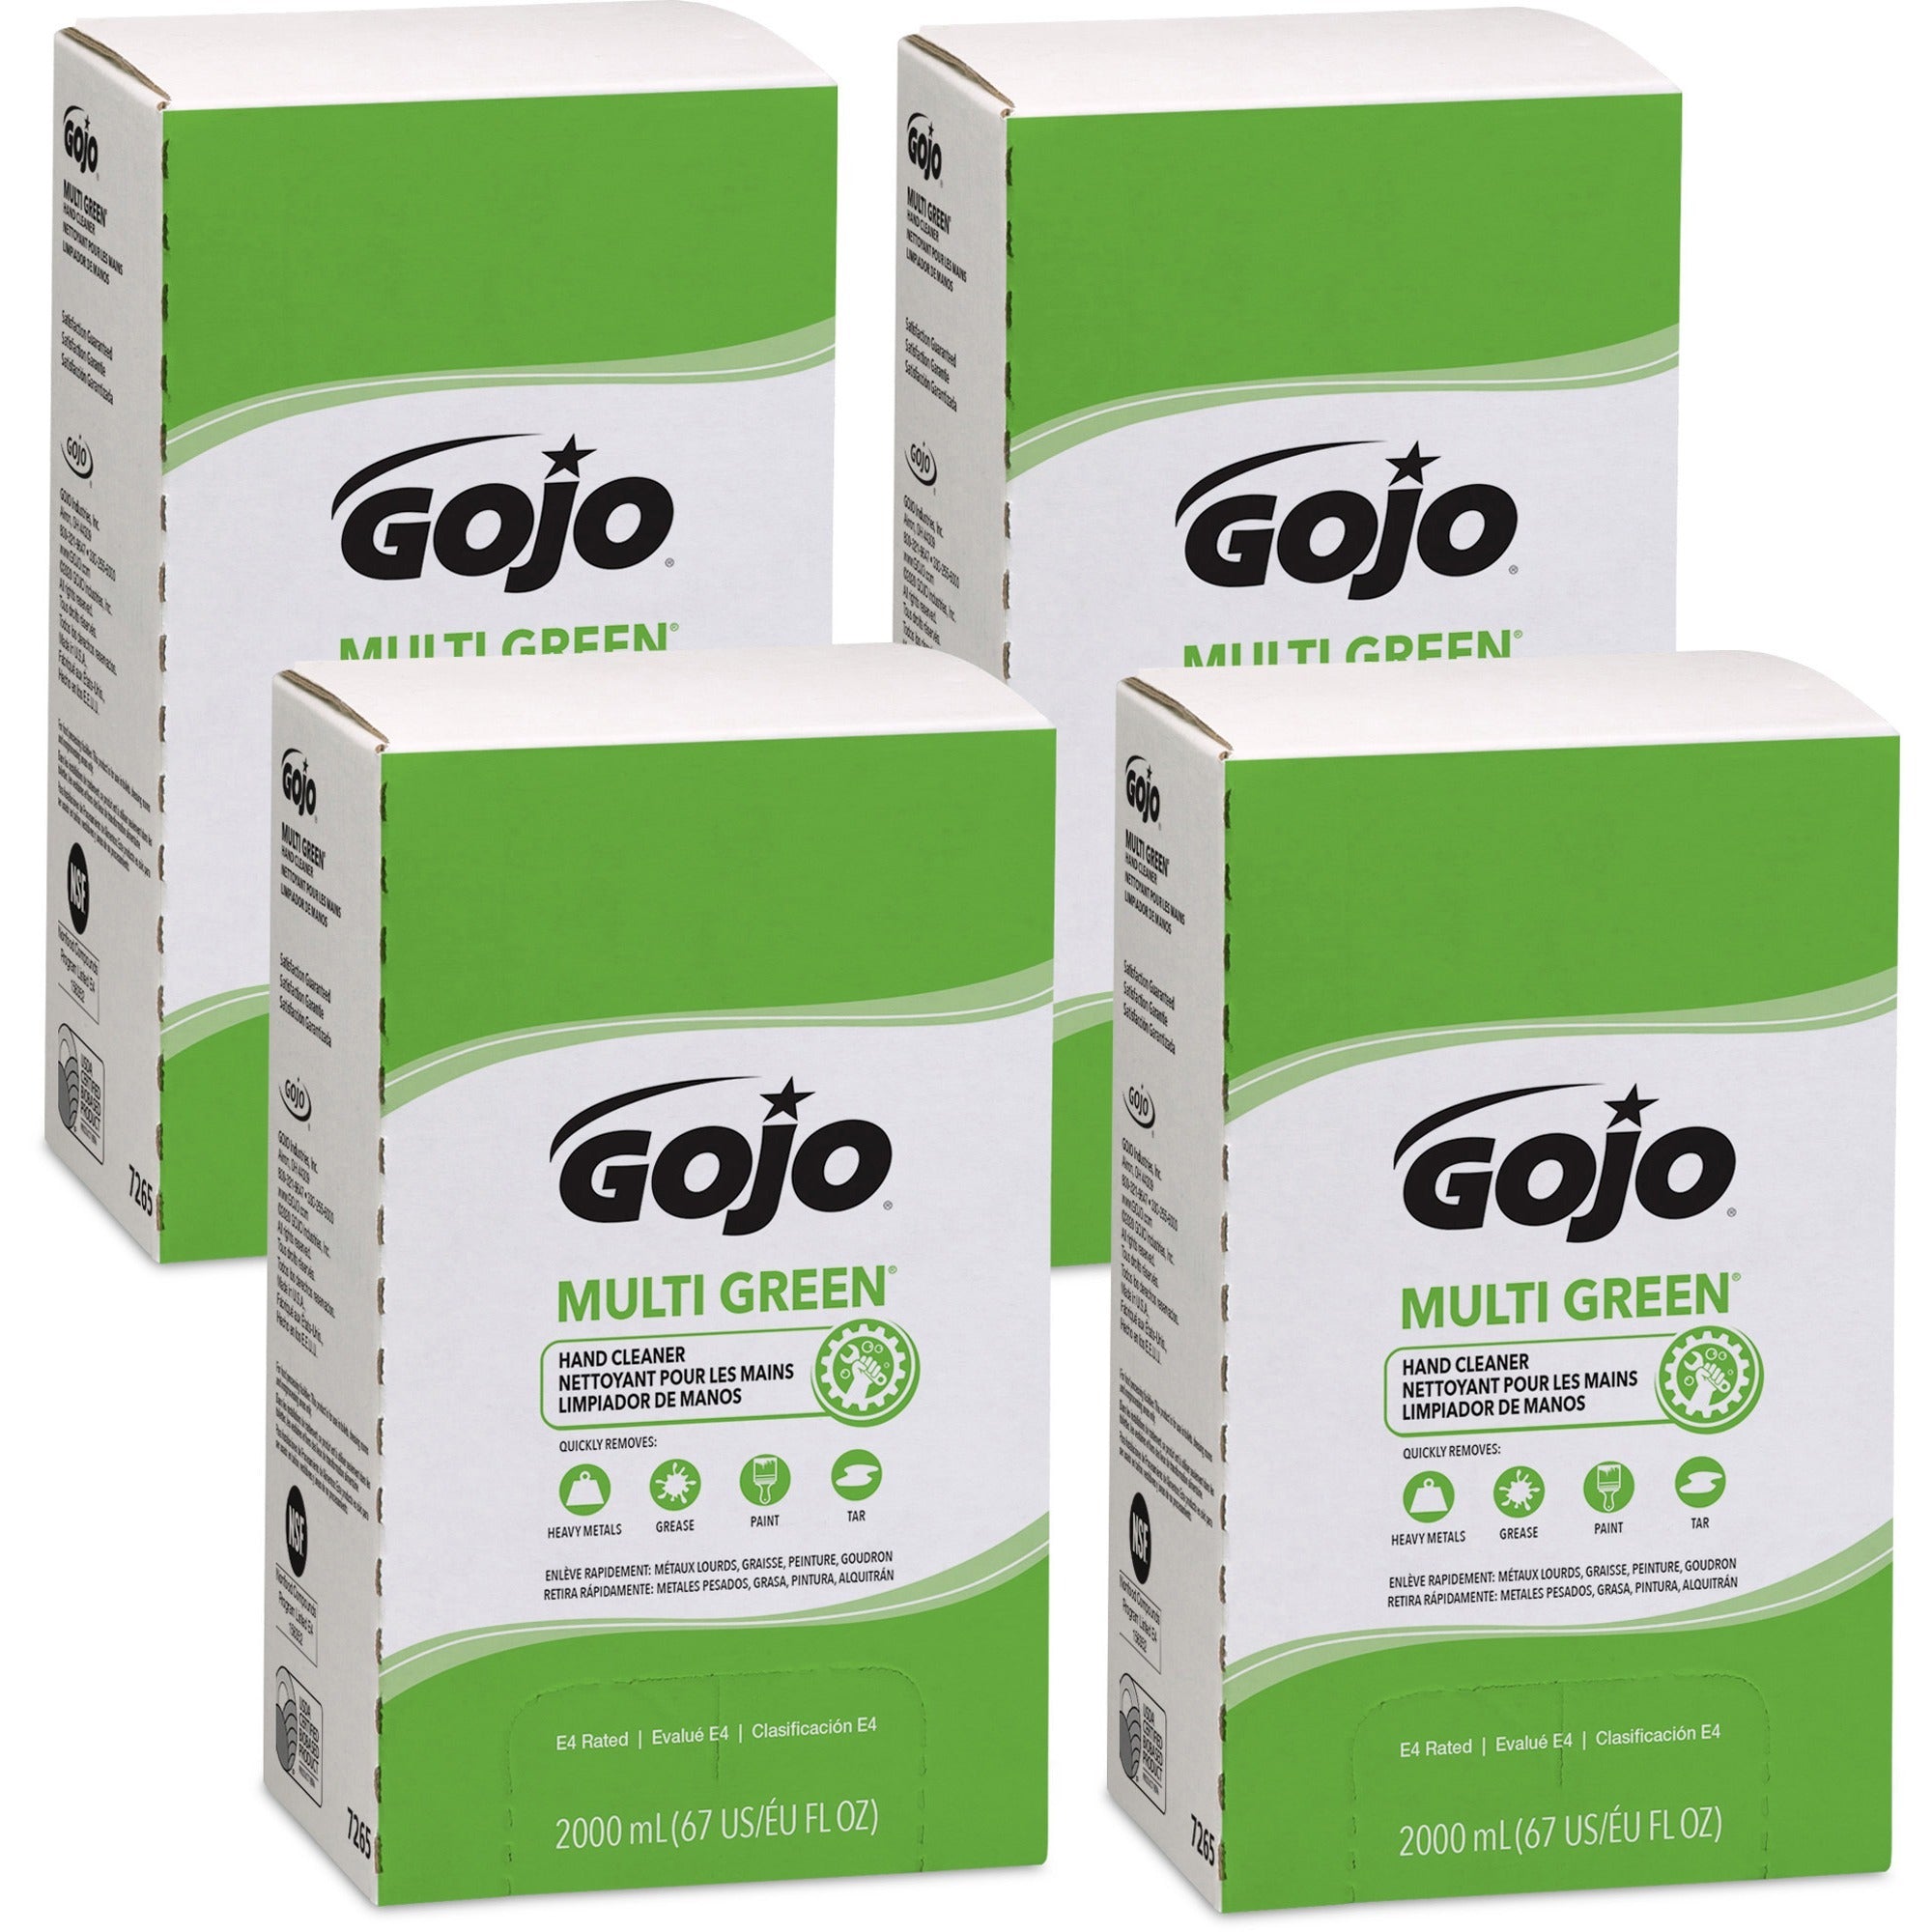 Gojo Multi Green Hand Cleaner - Citrus ScentFor - 67.6 fl oz (2 L) - Soil Remover, Dirt Remover, Kill Germs - Hand - Green - Non-abrasive - 4 / Carton - 